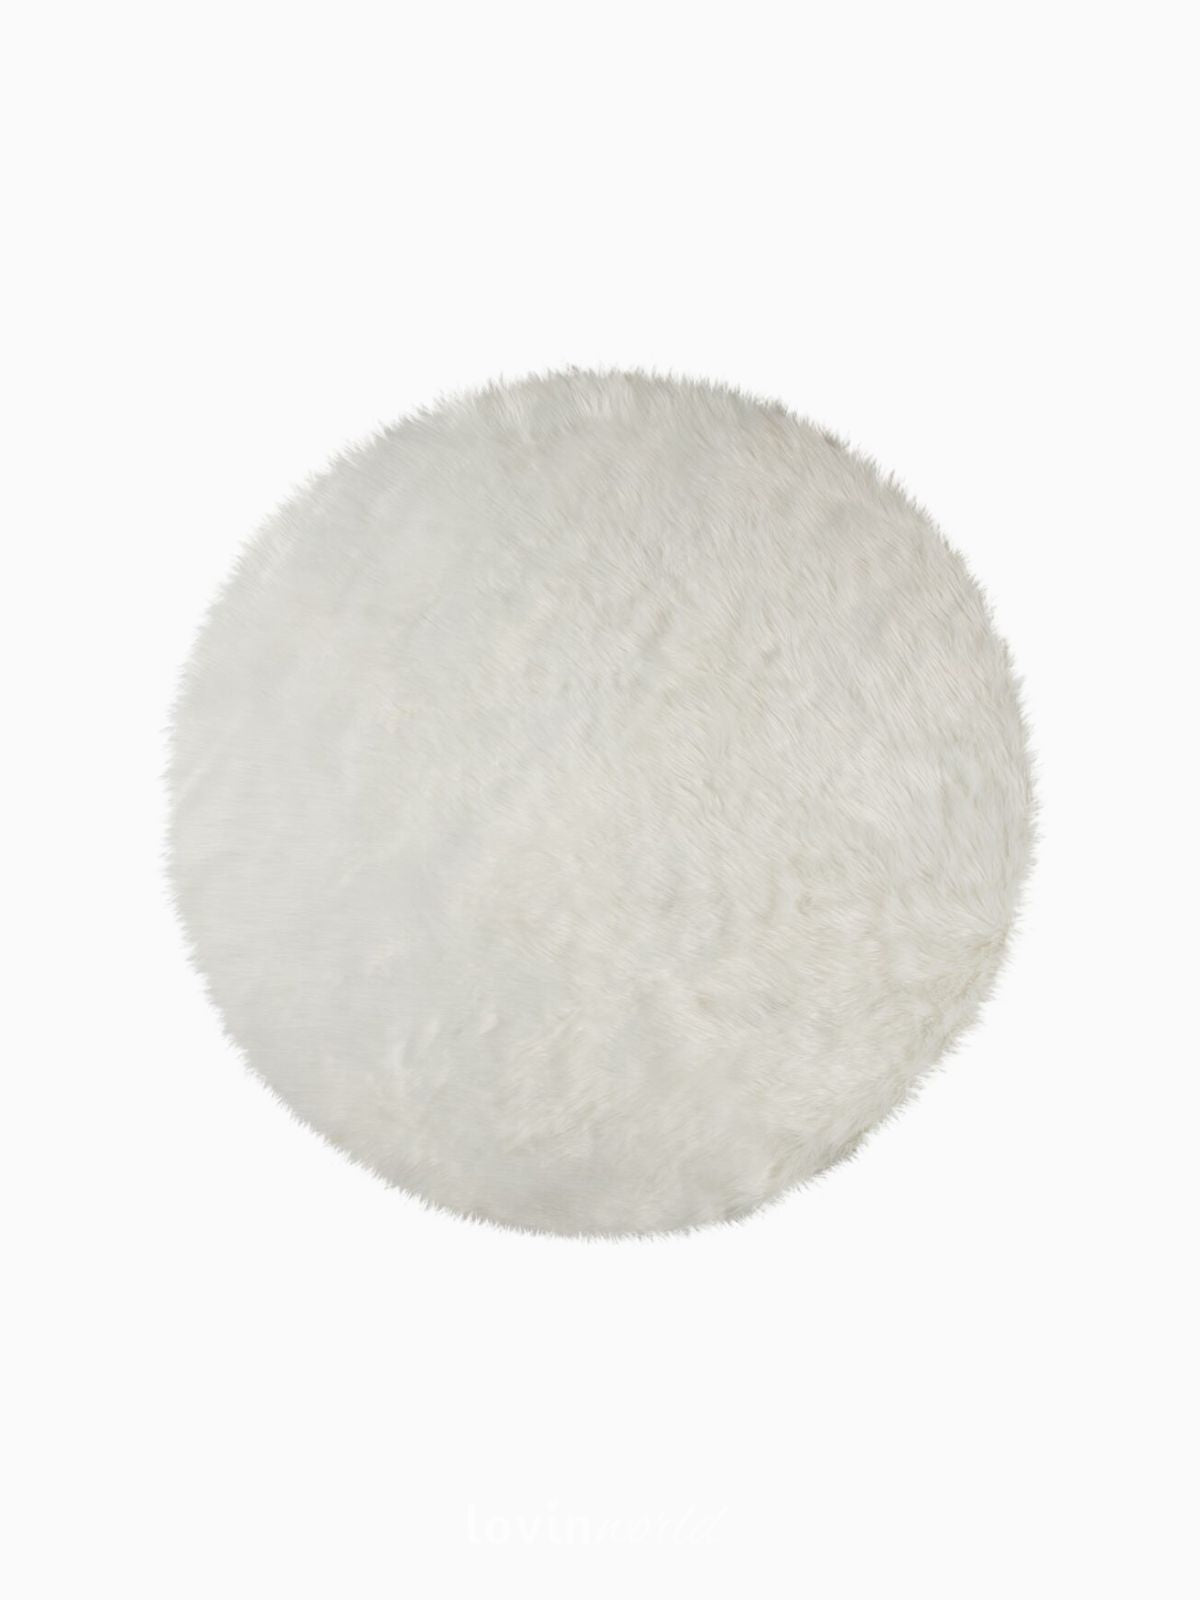 Tappeto rotondo shaggy Sheepskin in poliestere, colore avorio 120x120 cm.-1